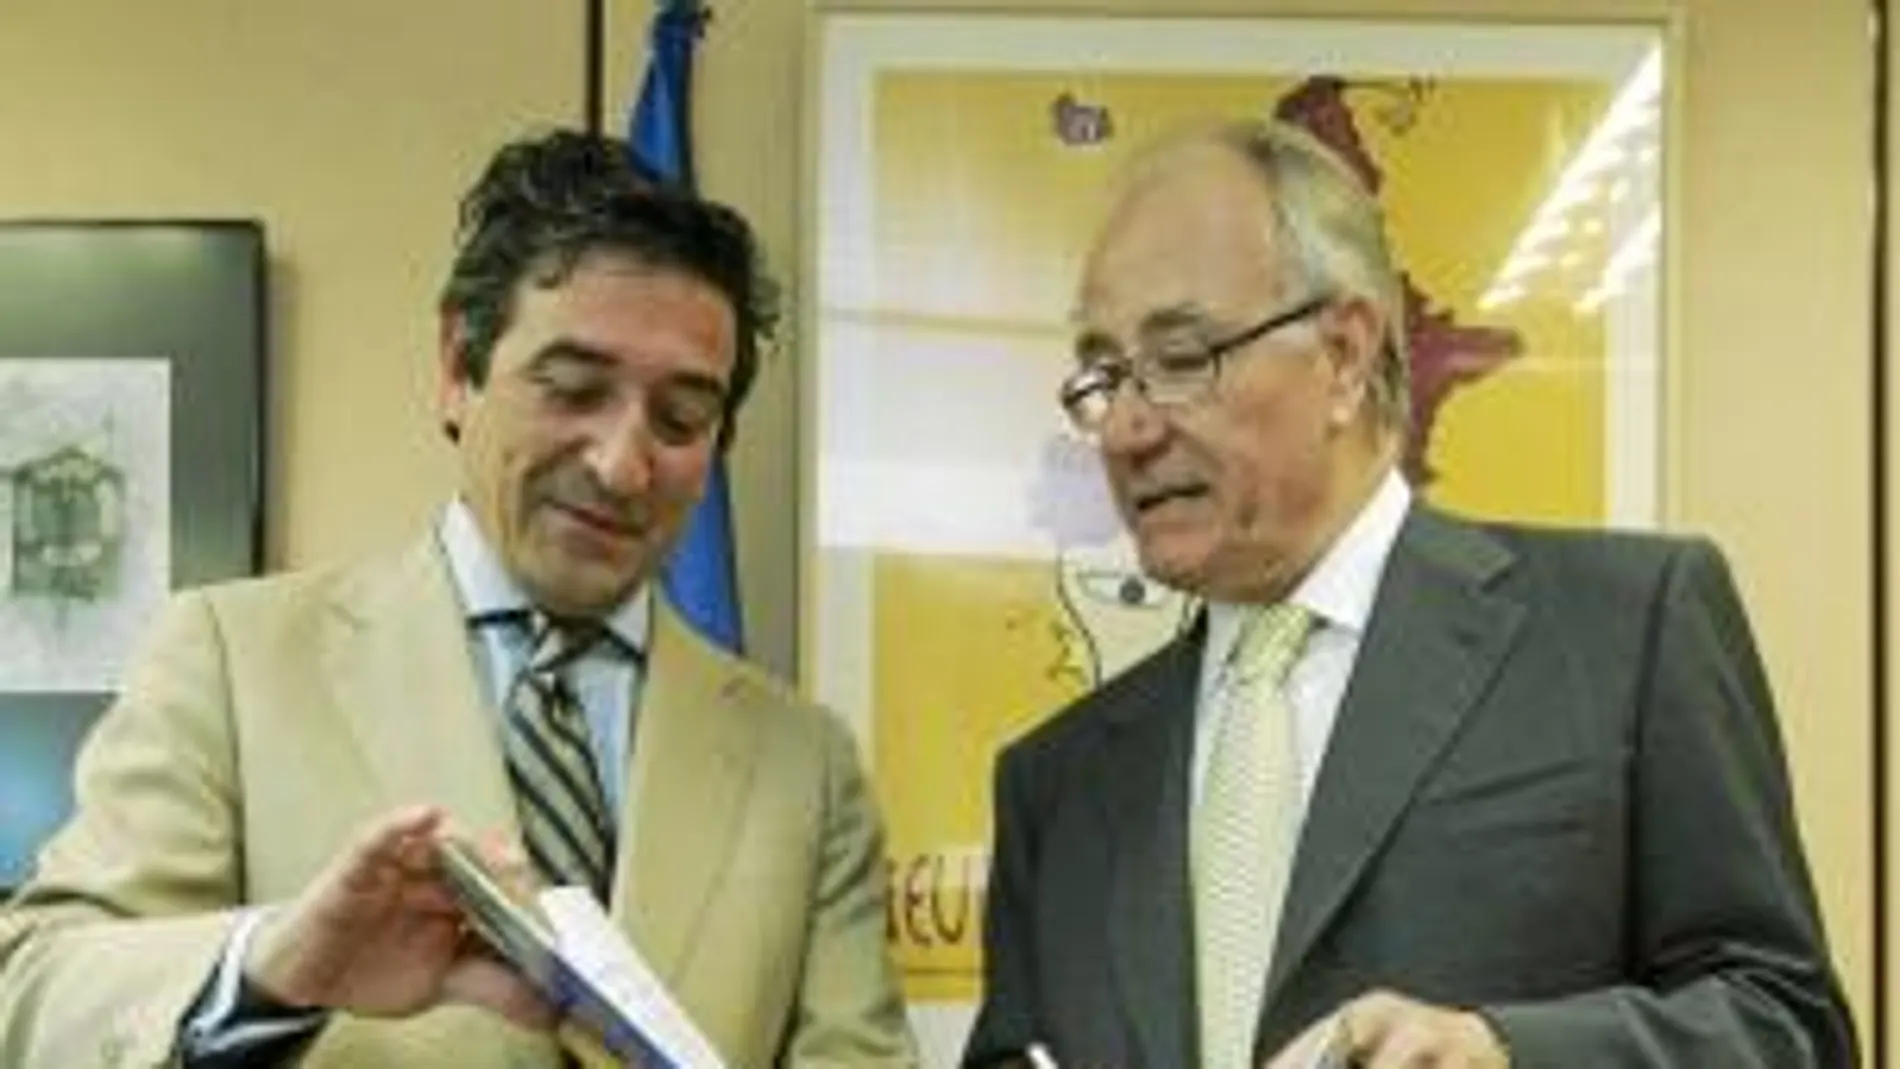 Ignacio Samper, director de la Oficina Española del Parlamento Europeo, recibió un ejemplar de manos de Manuel García-Piriz